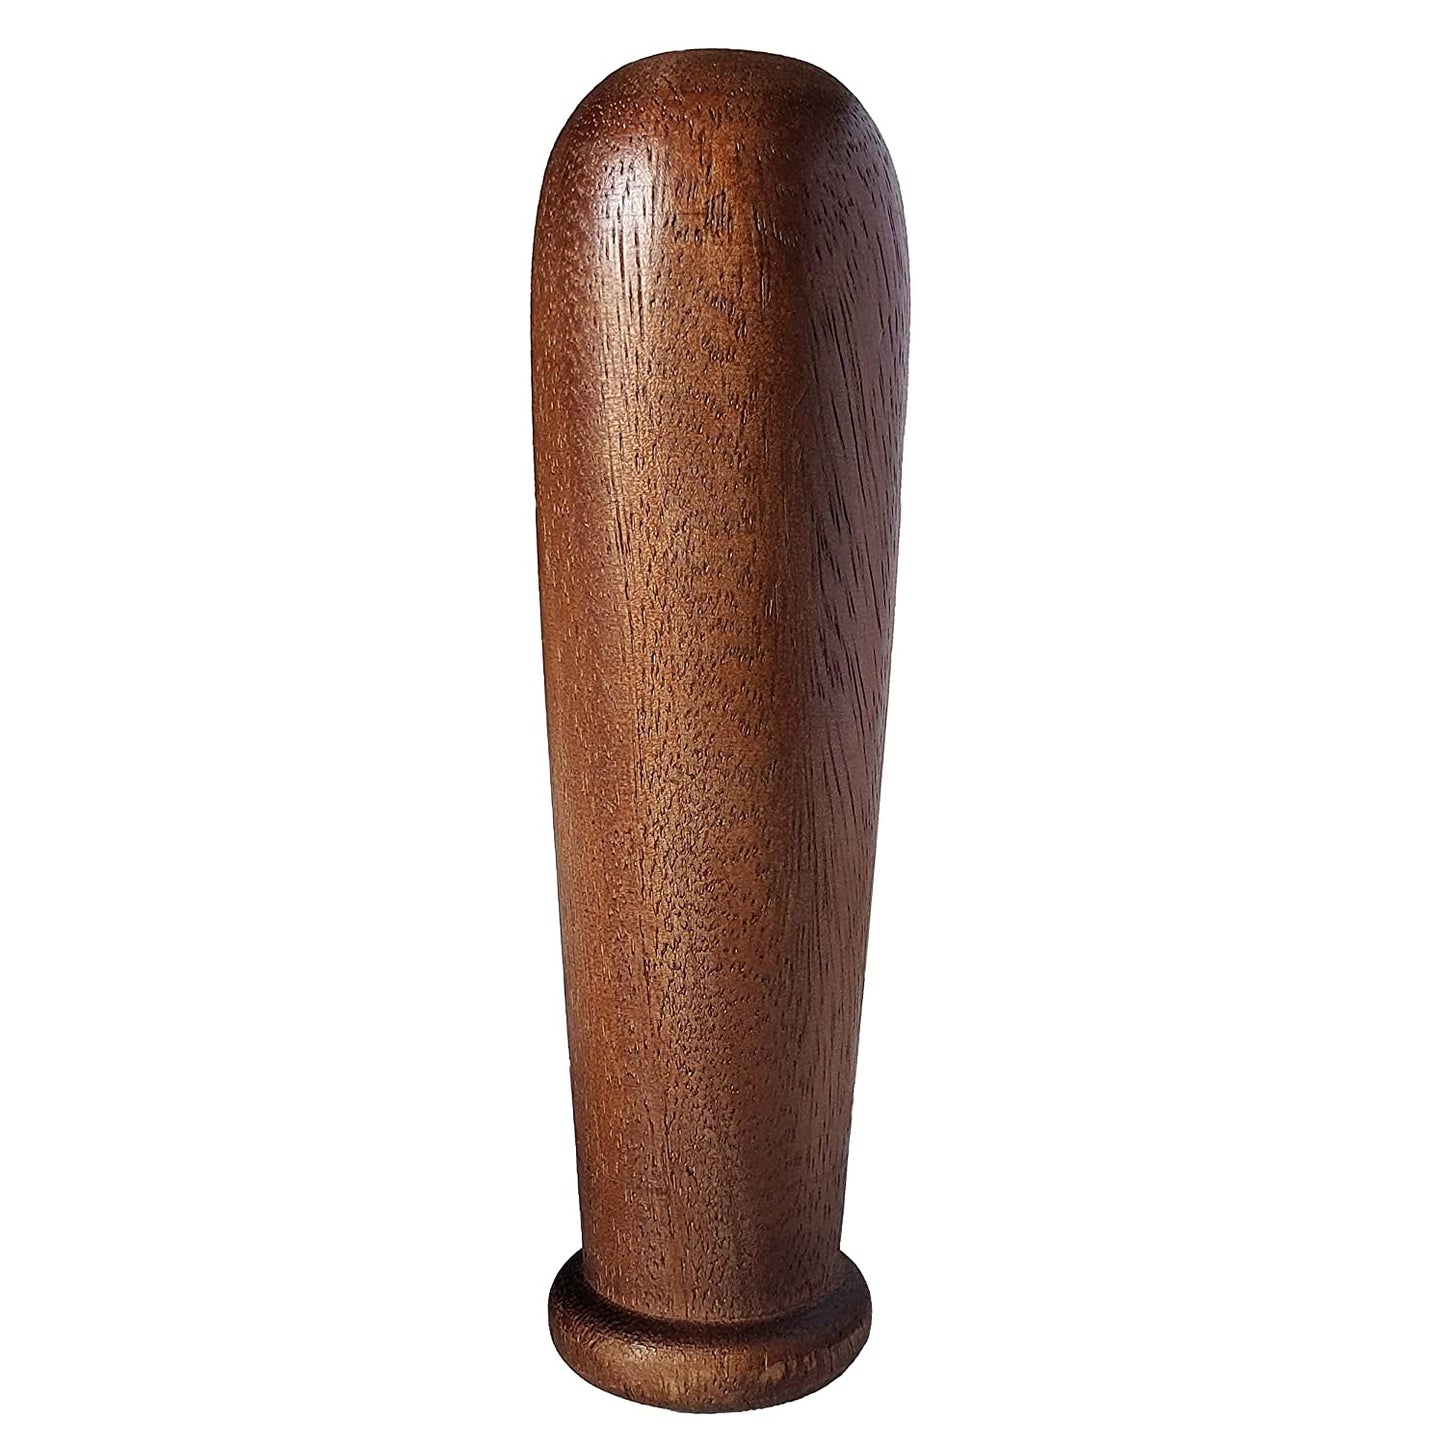 Acacia wood mortar and pestle 6 inch